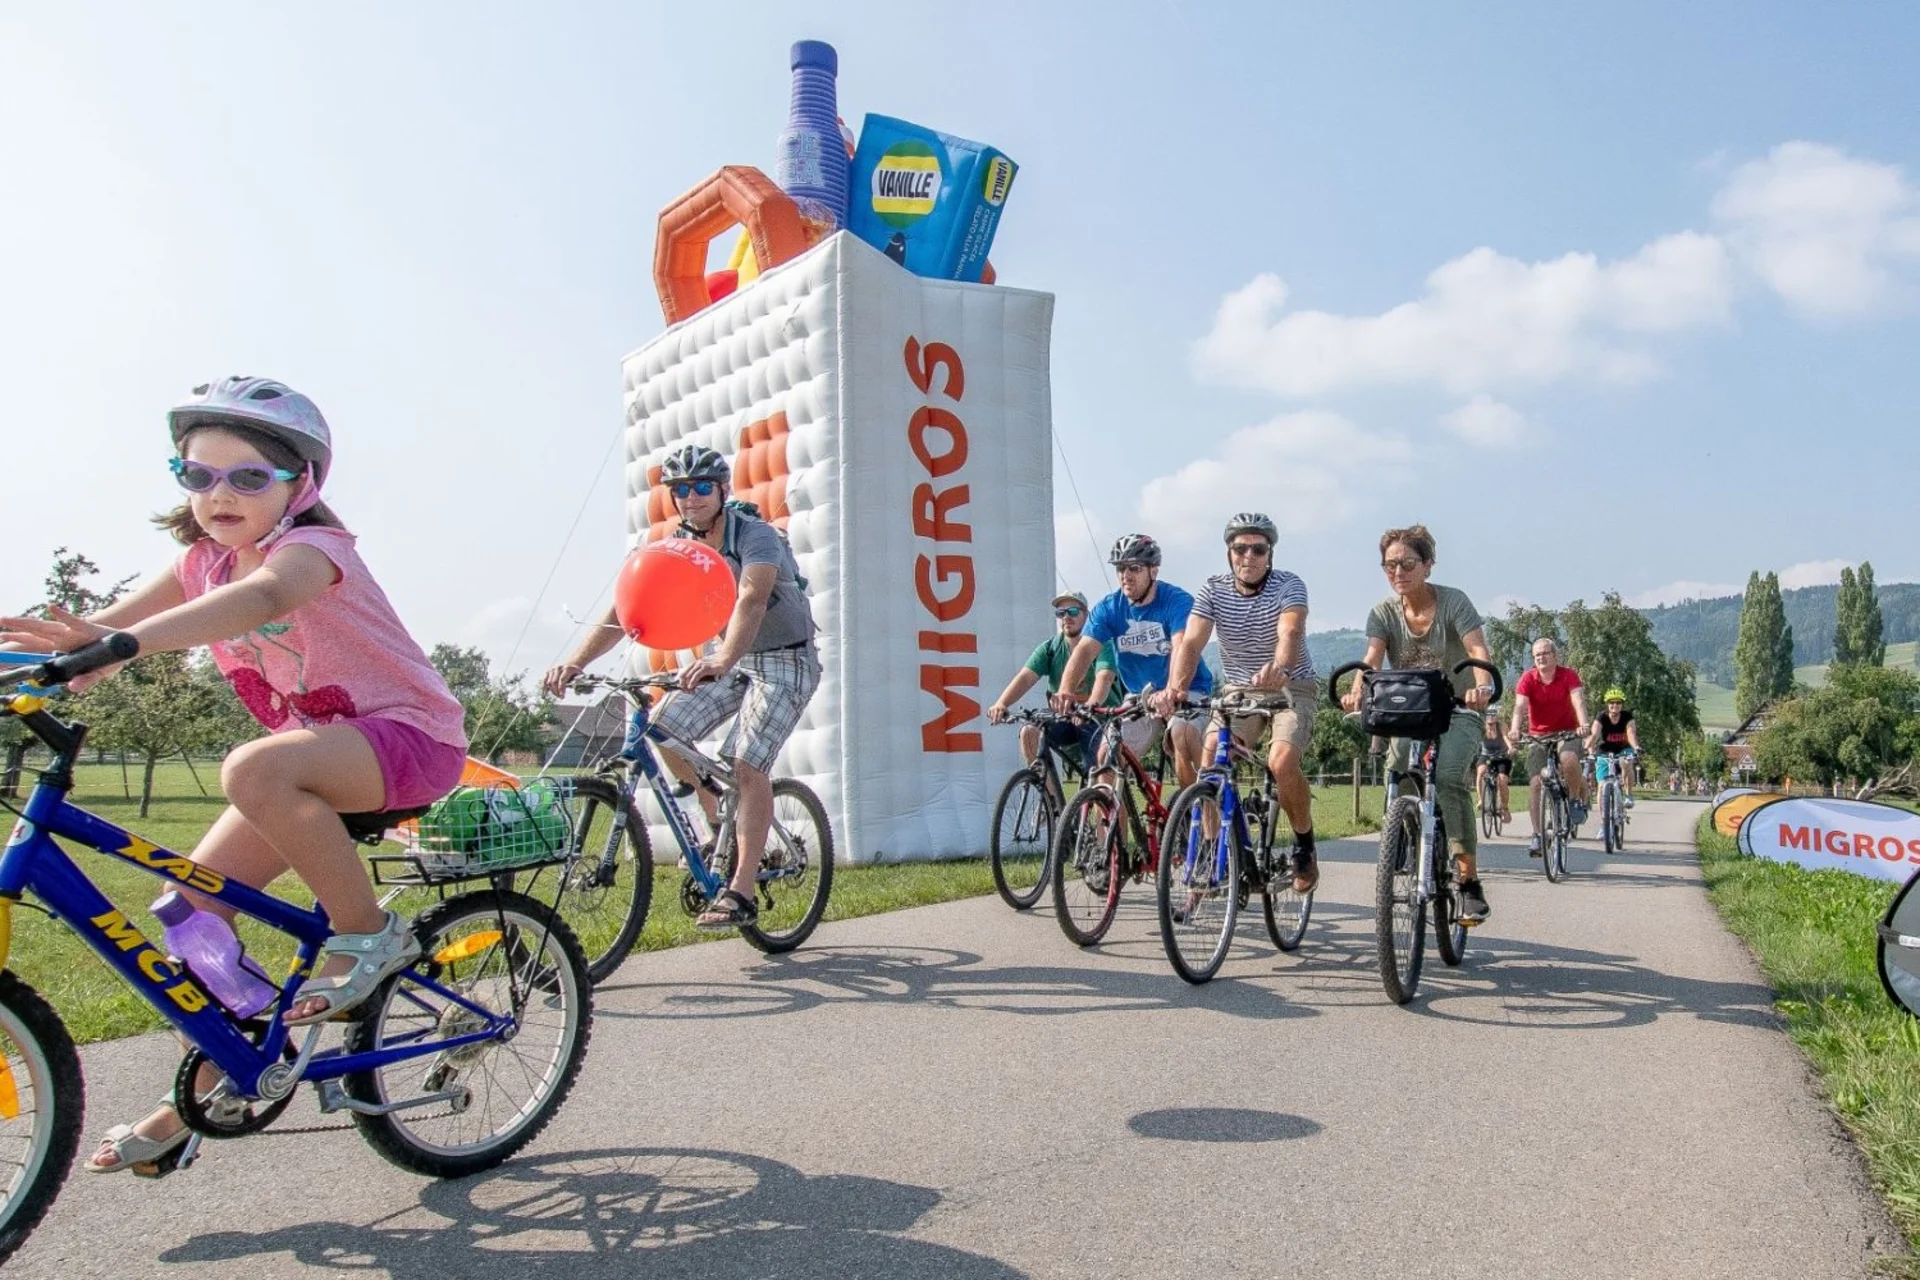 Plusieurs personnes roulent à vélo devant un immense cabas gonflable Migros.